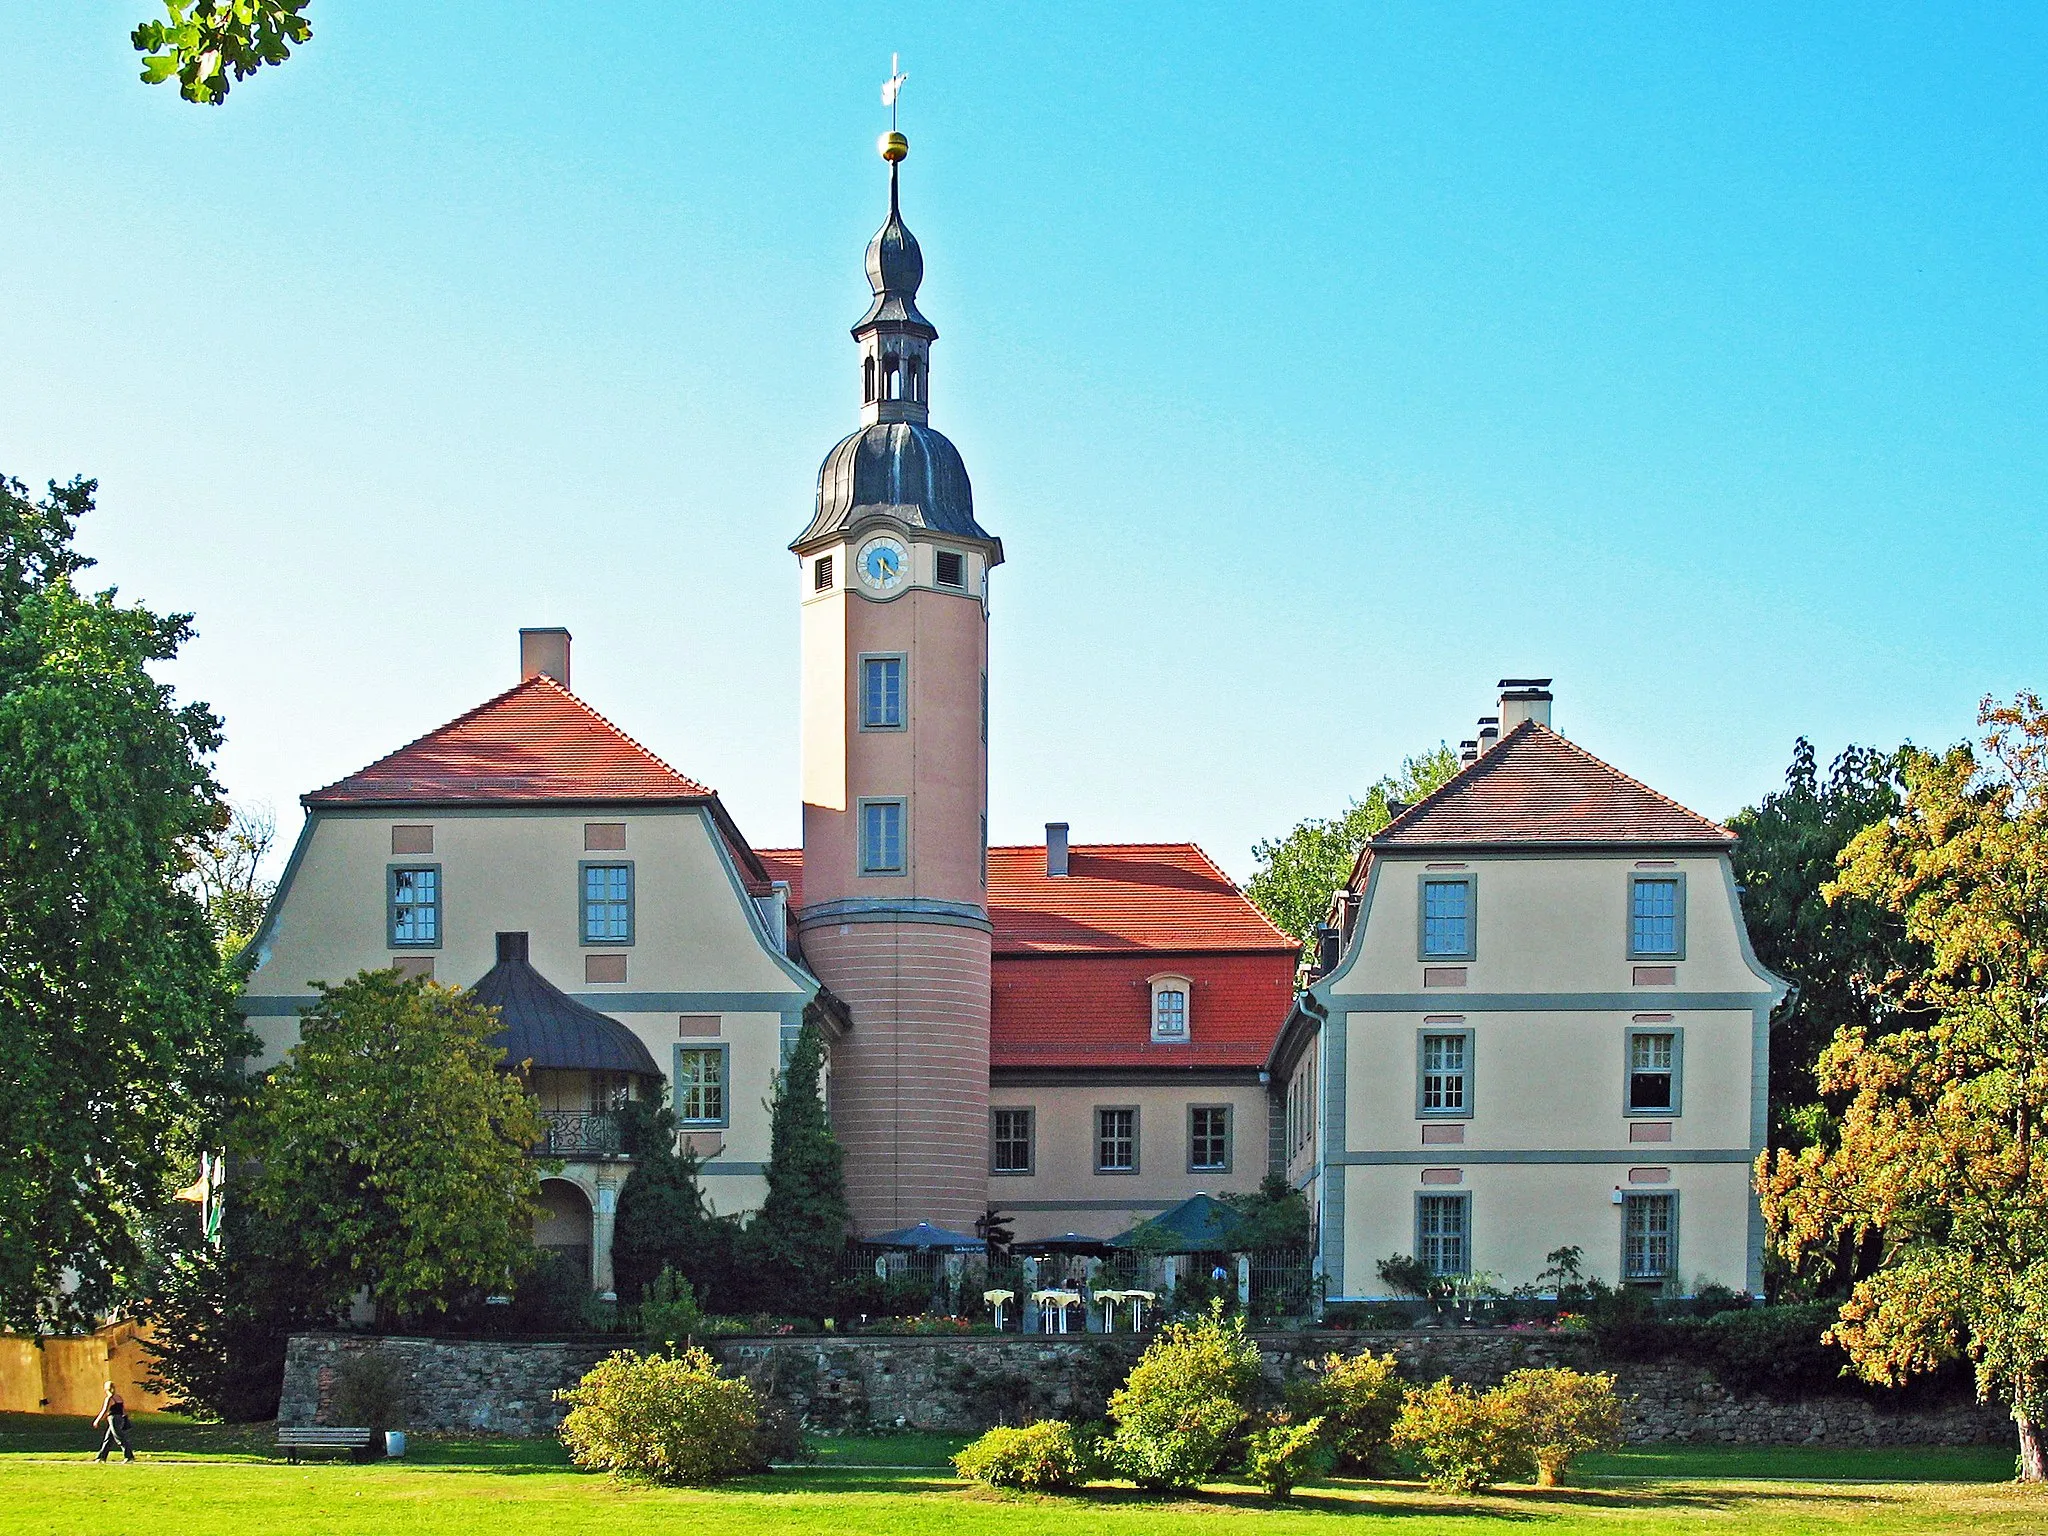 Photo showing: Castle in Machern, Saxony, Germany